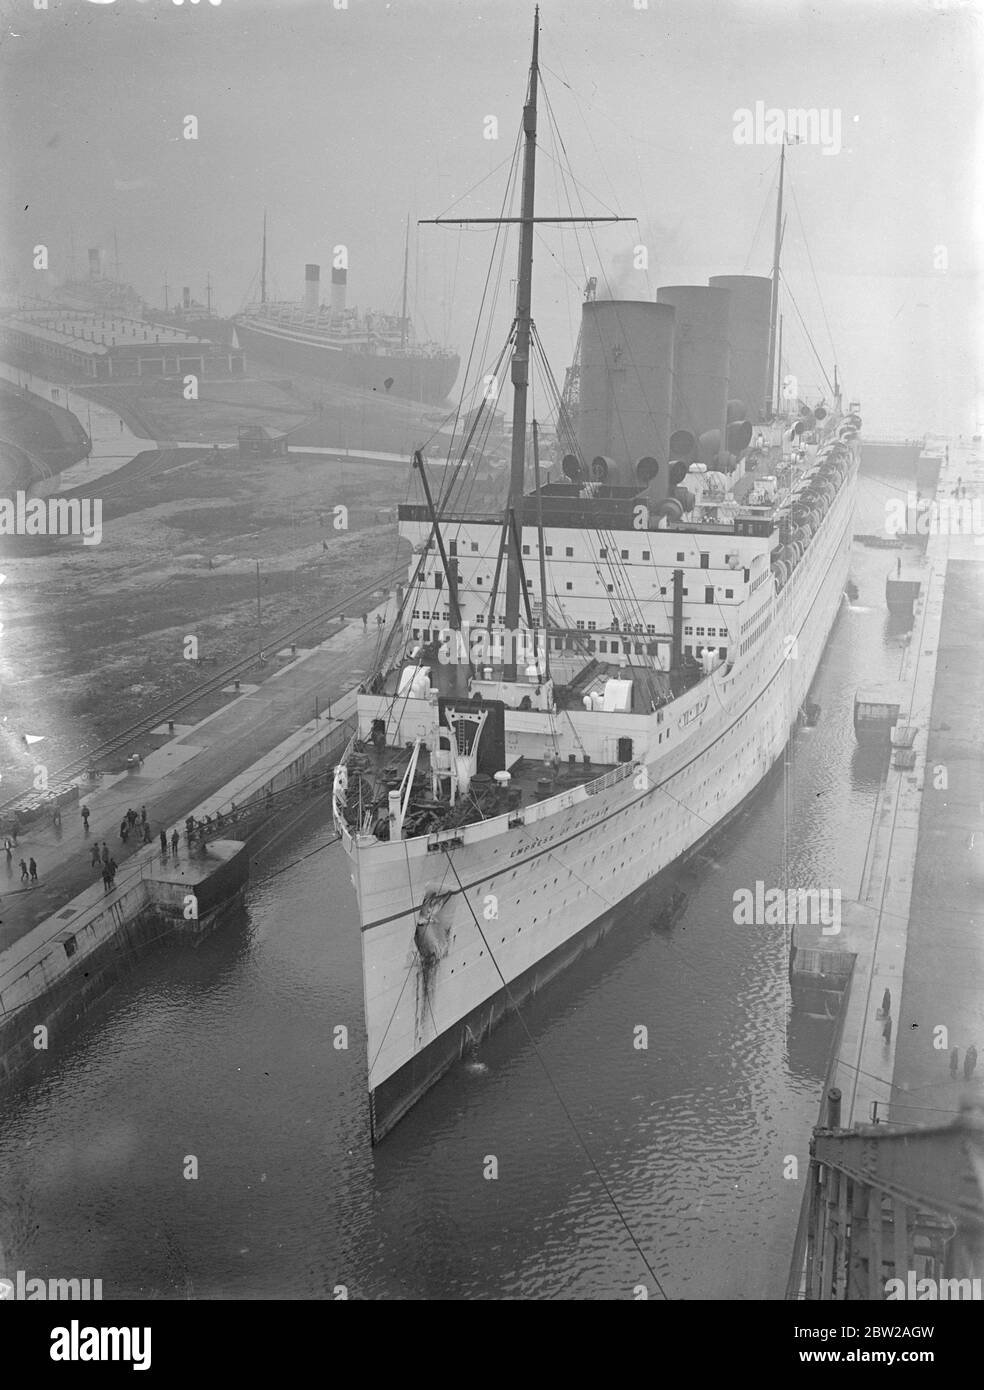 Erstes Linienschiff zur Überholung in Southampton. Die 'Empress of Britain' ist die erste Linie der Saison, die in Southampton zur Überholung an einem Trockendock angedockt wird. Sie besetzt nun das Trockendock von König George V. Foto zeigt, die 'Empress of Britain' in King George V Dock in Southampton, als das Wasser abgepumpt wurde. 17. November 1937 Stockfoto